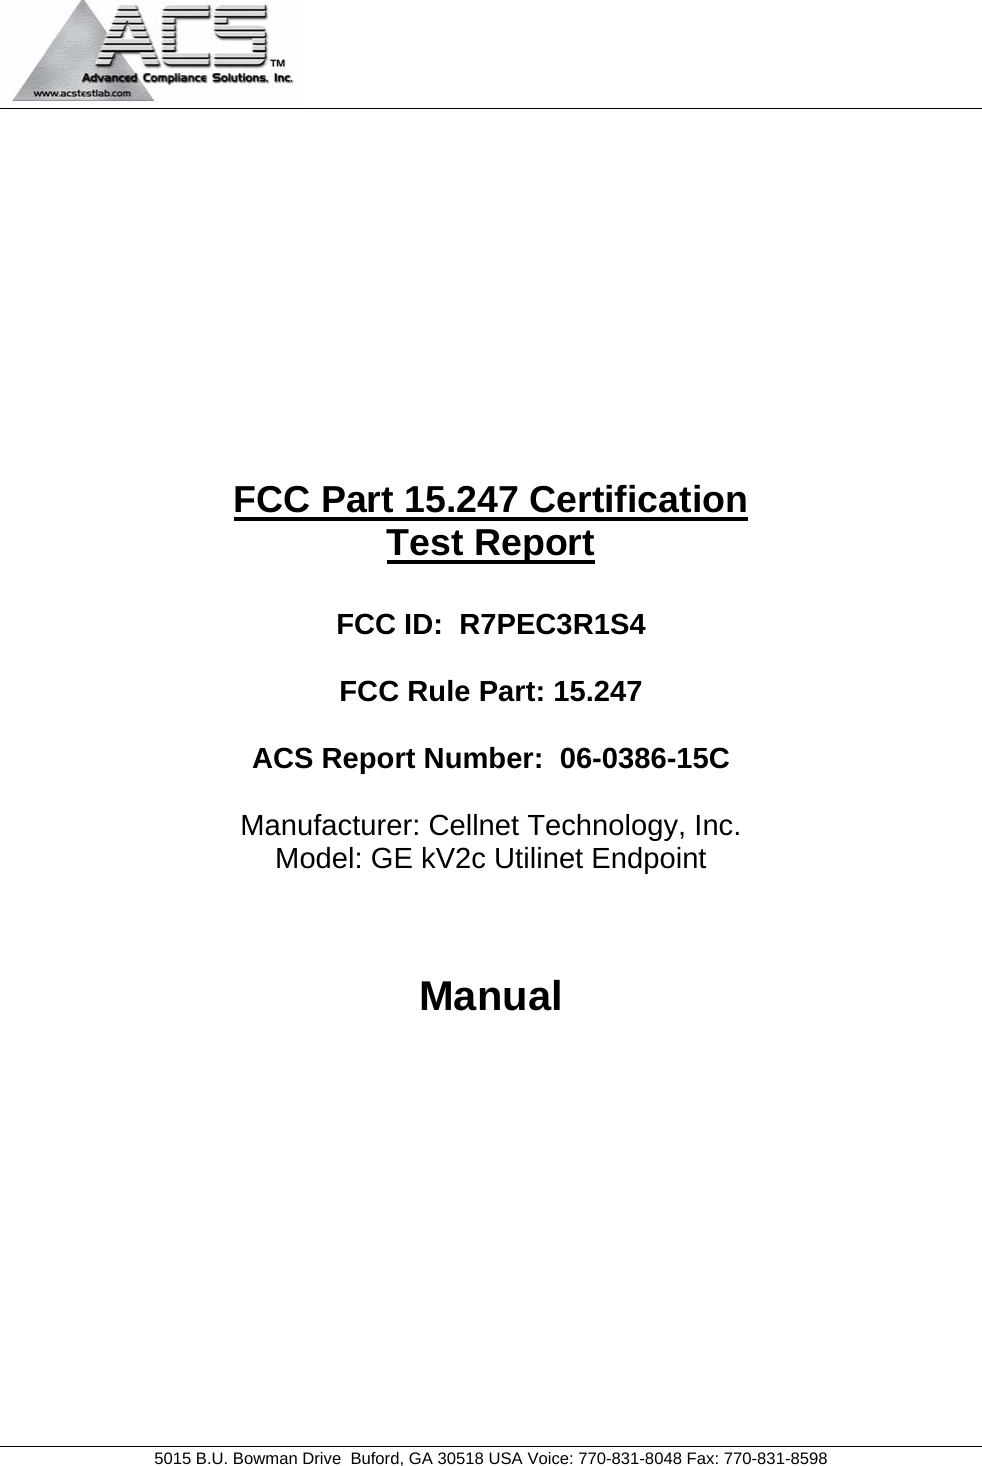   5015 B.U. Bowman Drive  Buford, GA 30518 USA Voice: 770-831-8048 Fax: 770-831-8598           FCC Part 15.247 Certification Test Report  FCC ID:  R7PEC3R1S4  FCC Rule Part: 15.247  ACS Report Number:  06-0386-15C   Manufacturer: Cellnet Technology, Inc. Model: GE kV2c Utilinet Endpoint   Manual        